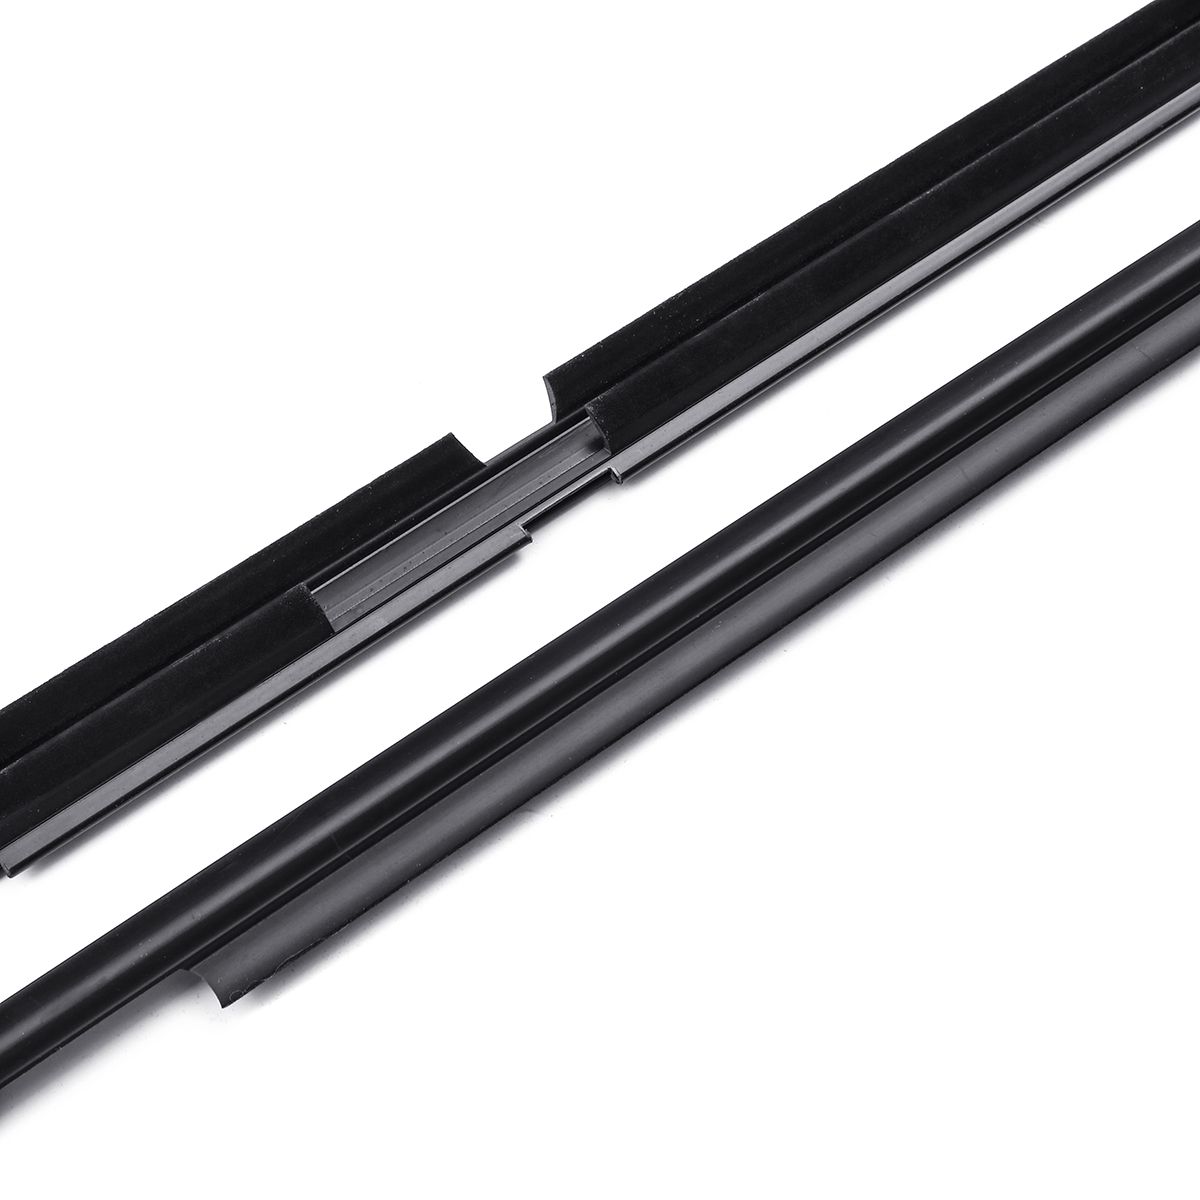 Black-Door-Belt-Molding-Weatherstrips-Car-Door-Edge-Protector-For-Toyota-Land-Cruiser-Prado-GX470-03-1585618